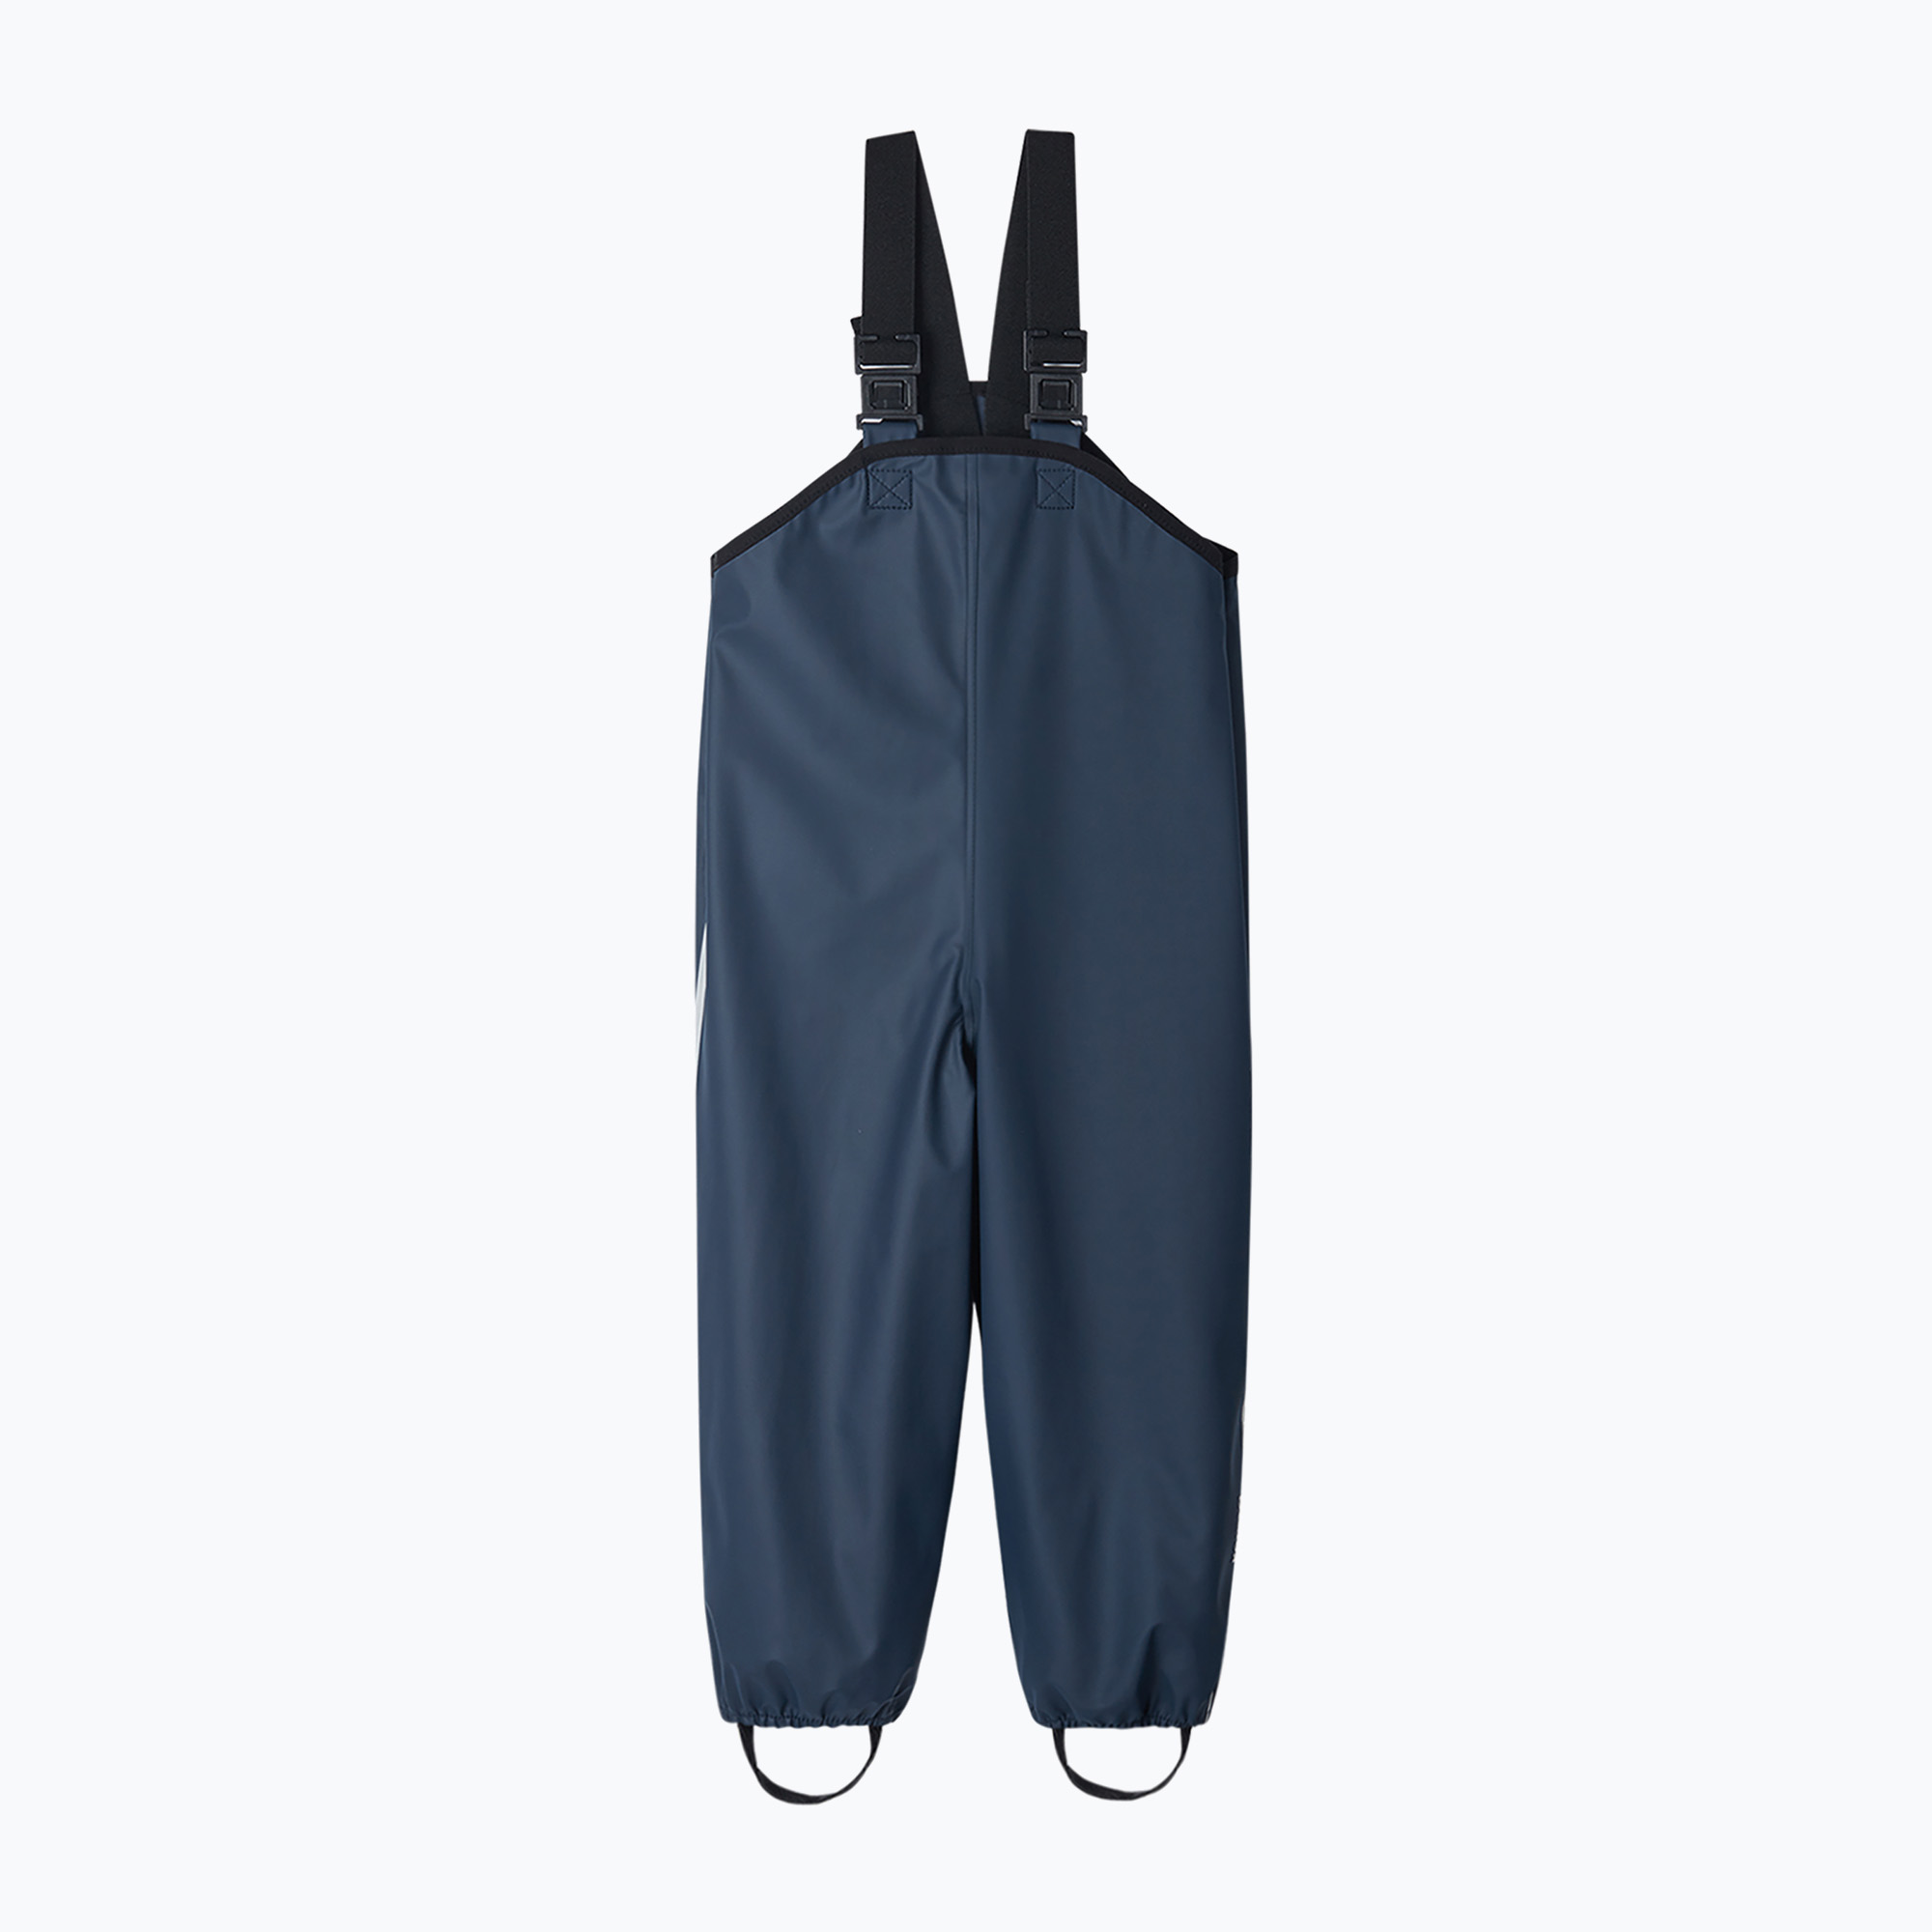 Reima Lammikko pantaloni de ploaie pentru copii albastru marin 5100026A-6980